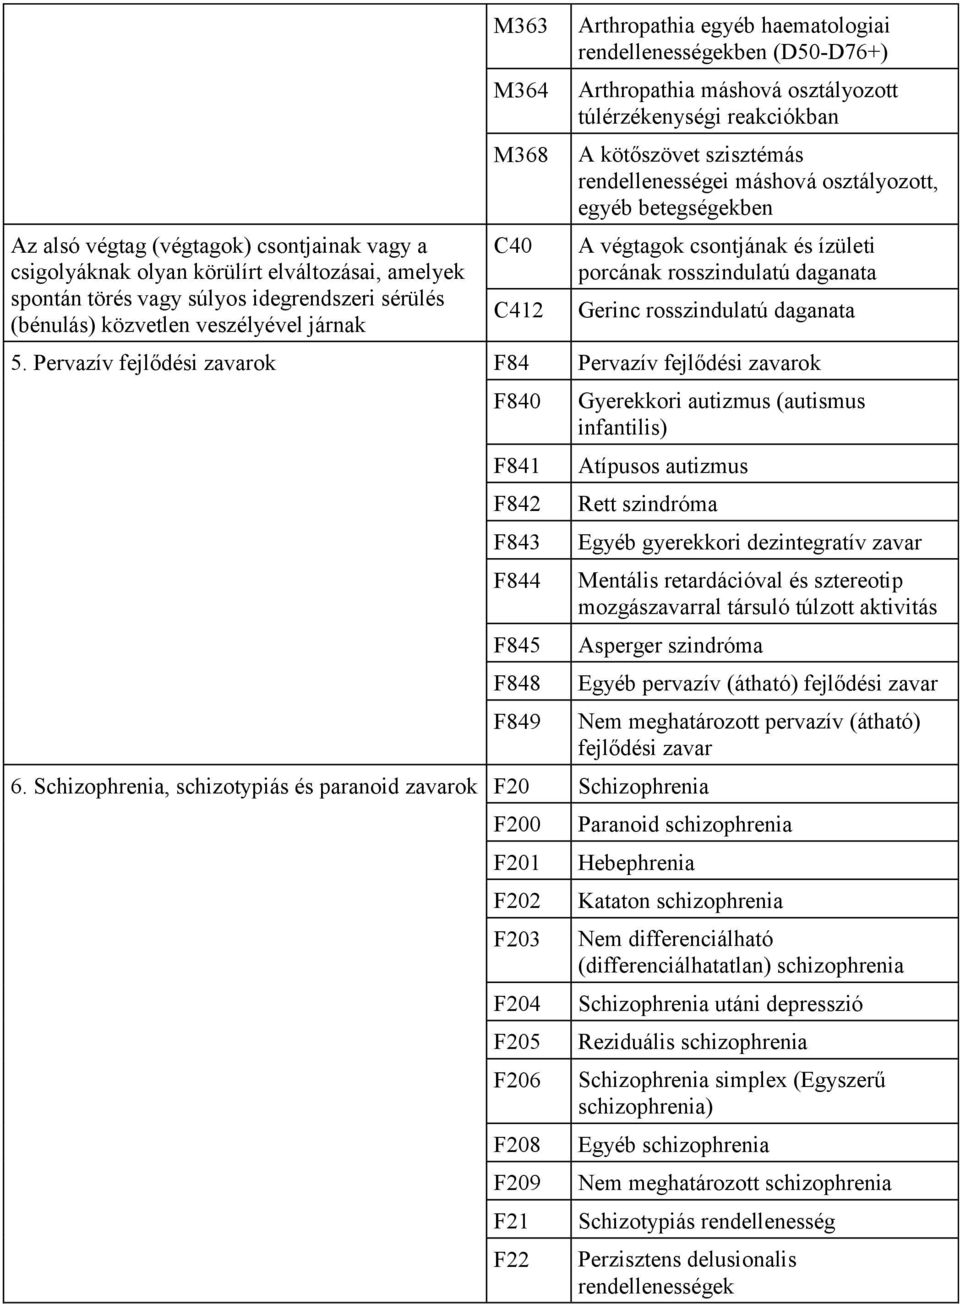 egyéb psoriasisos arthropathiák (l40 5)